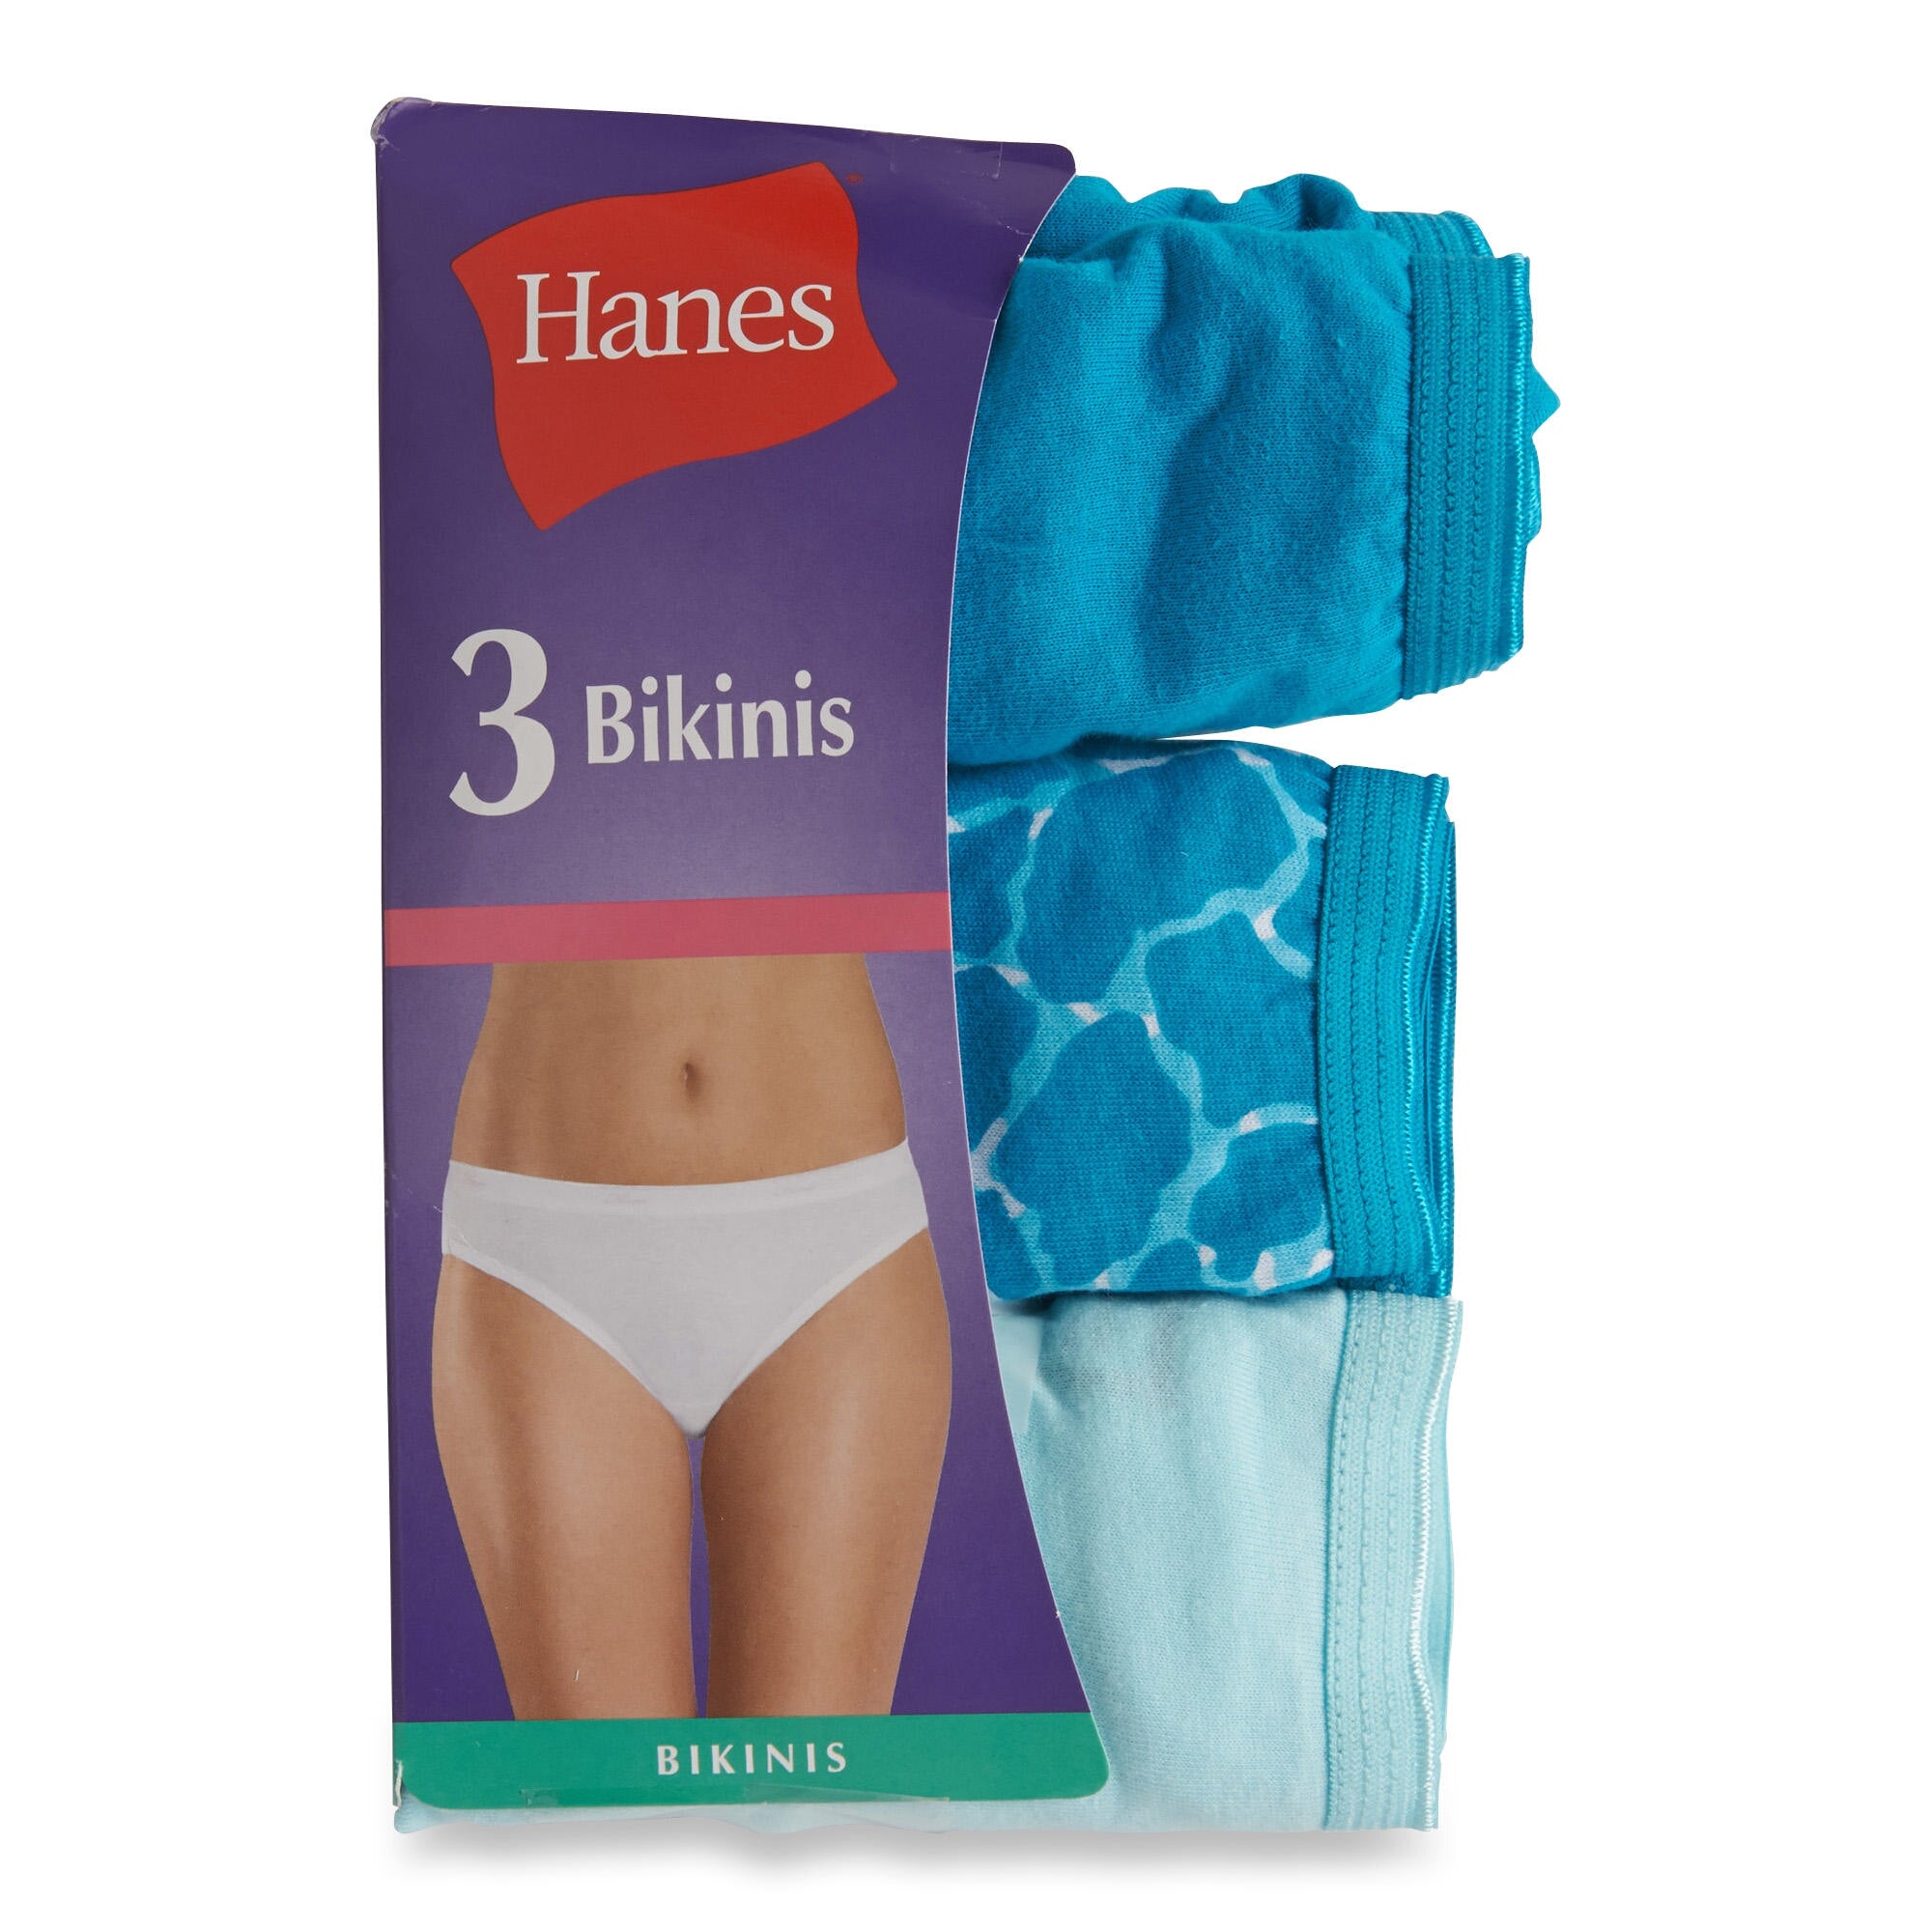 Hanes Bikinis in Womens Panties 